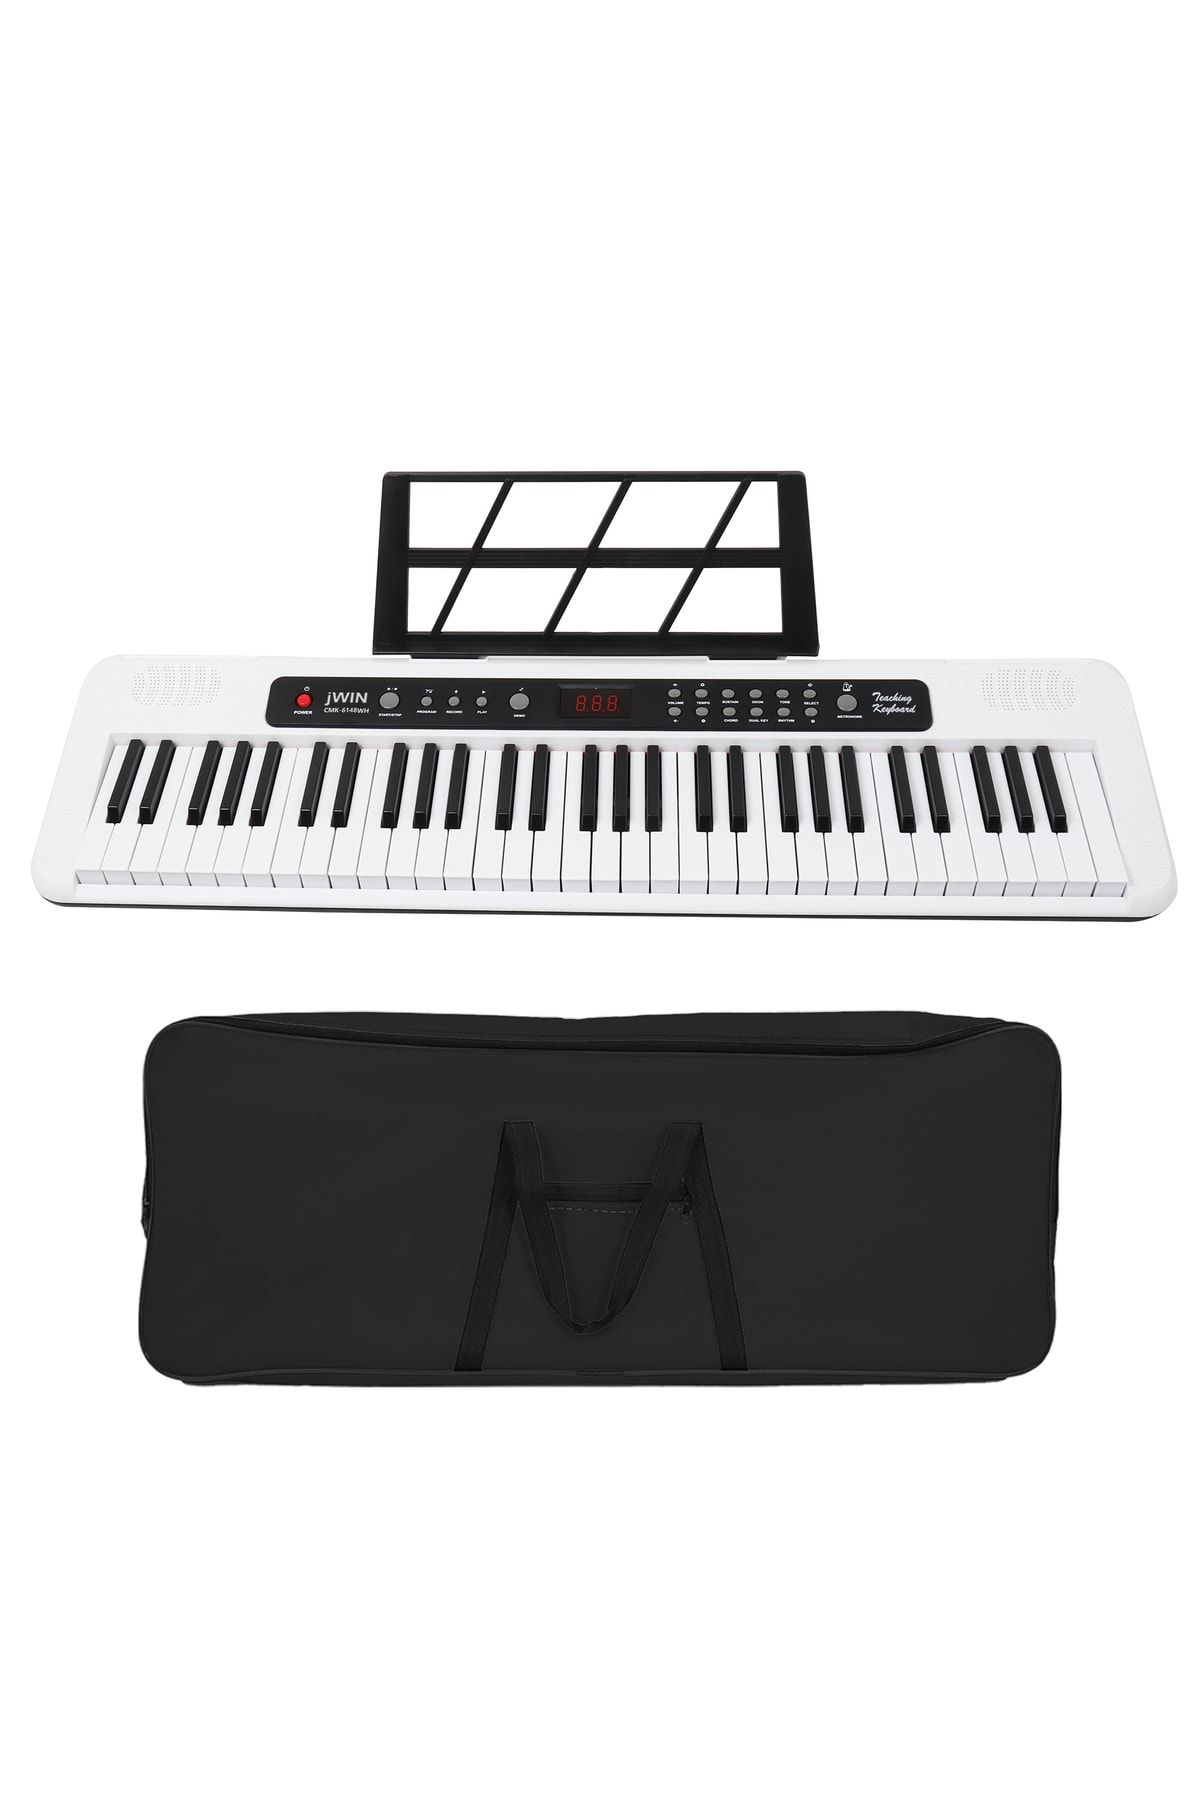 JWIN Cmk-6148wh Piyano Stili 61 (5 Oktav) Tuşlu Org Eğitici Nota Etiket Adaptör,mikrofon Ve Kılıf